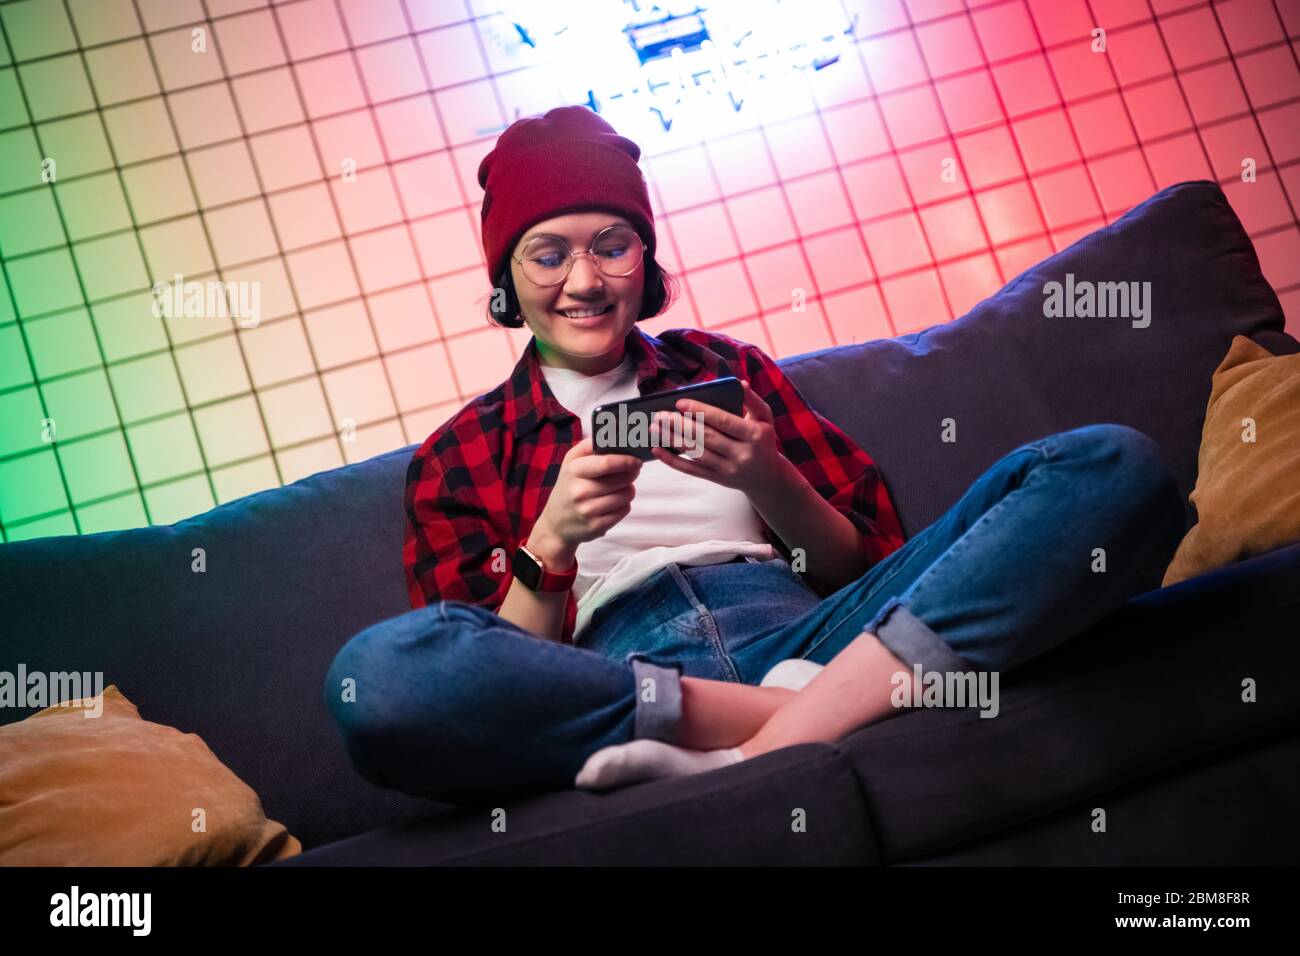 Teenager-Mädchen mit einem Smartphone während der Online-Shooting-Gaming. Daumen hoch. Stockfoto